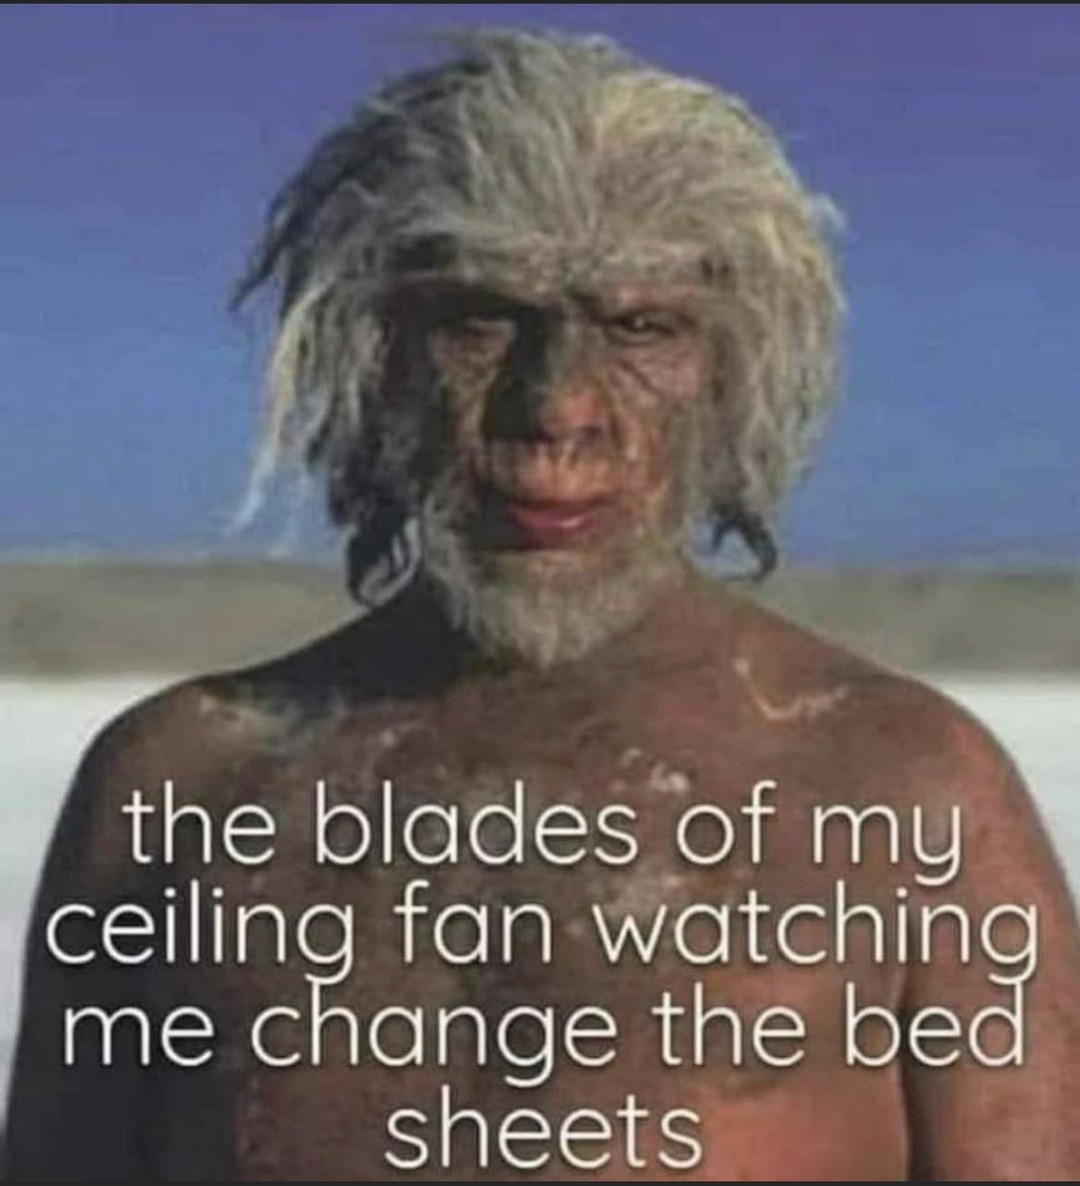 Ceiling fan vs bed sheets - meme